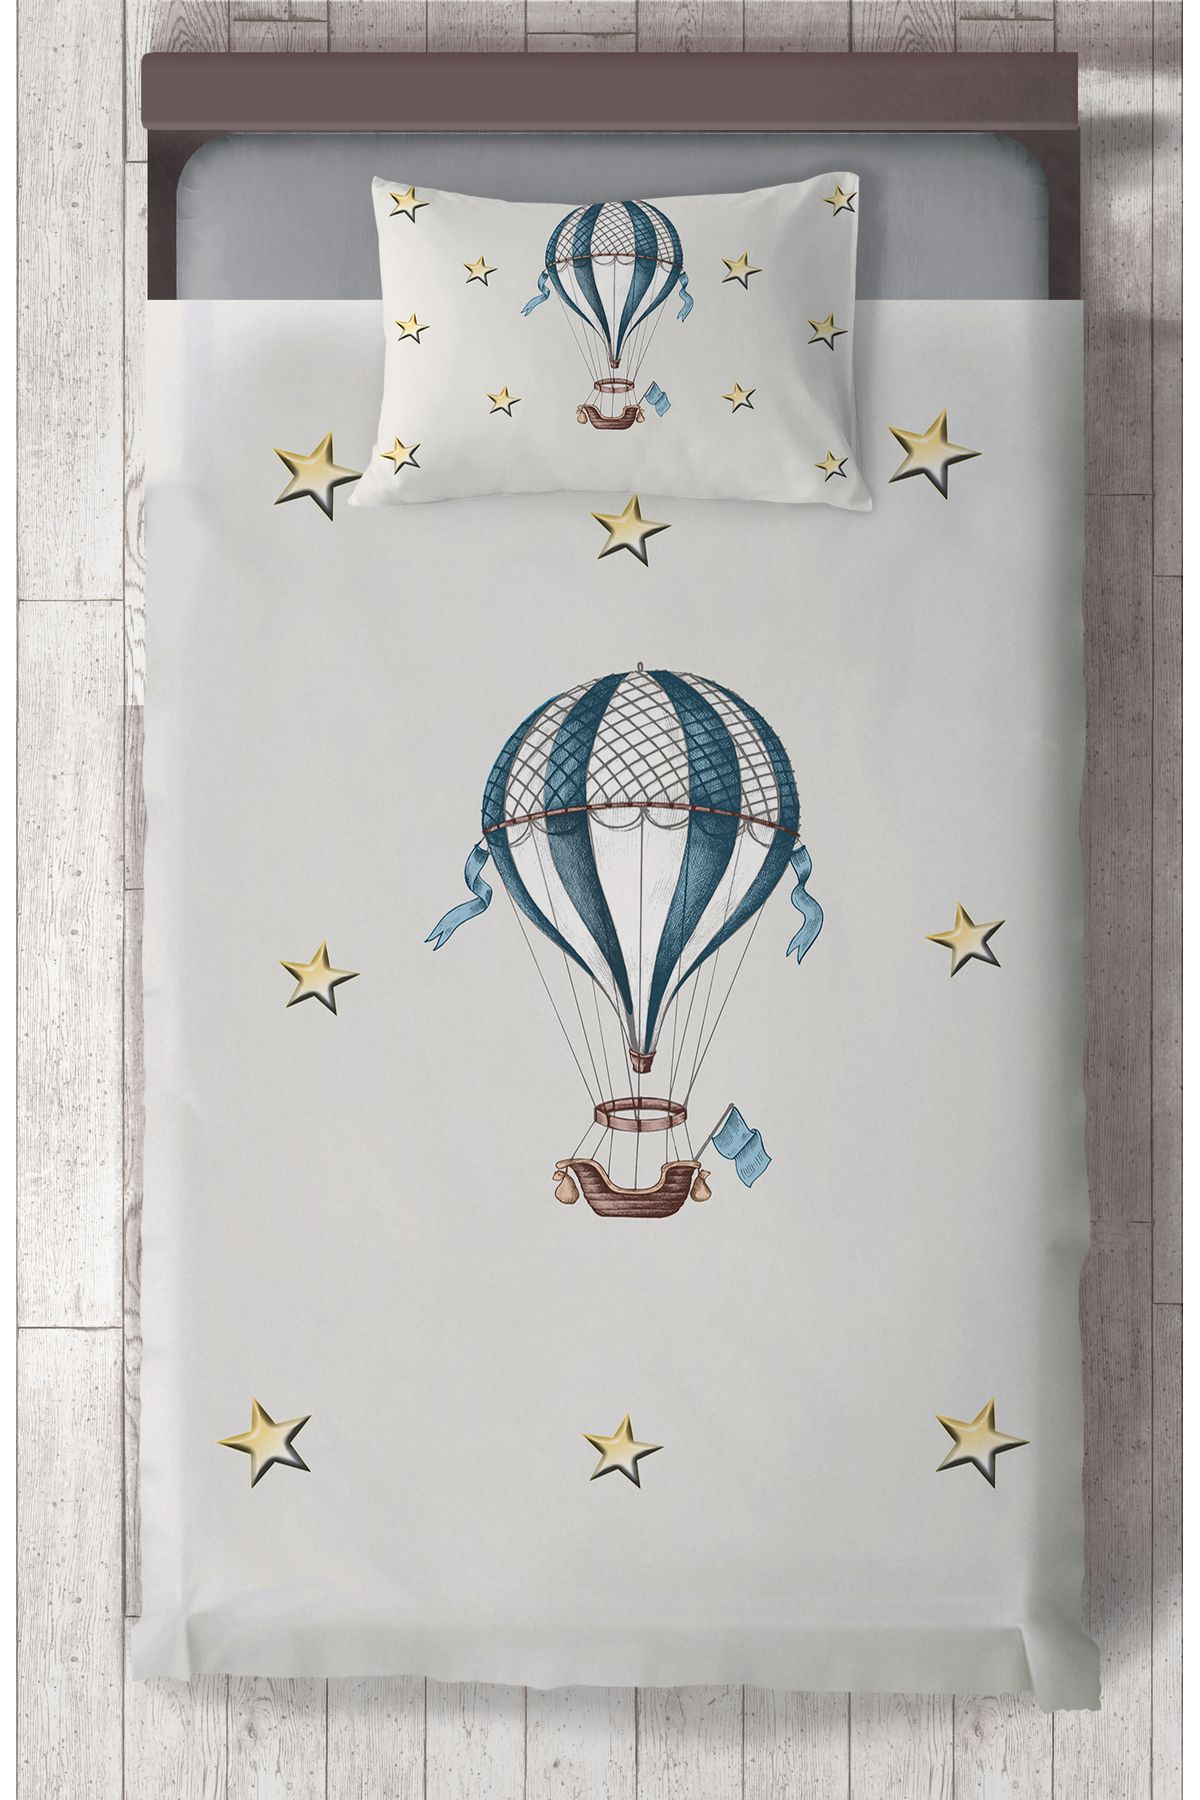 MEKTA HOME BEBEK VE ÇOCUK ODASI Uçan Balon ve Yıldızlar Desenli Yatak Örtüsü